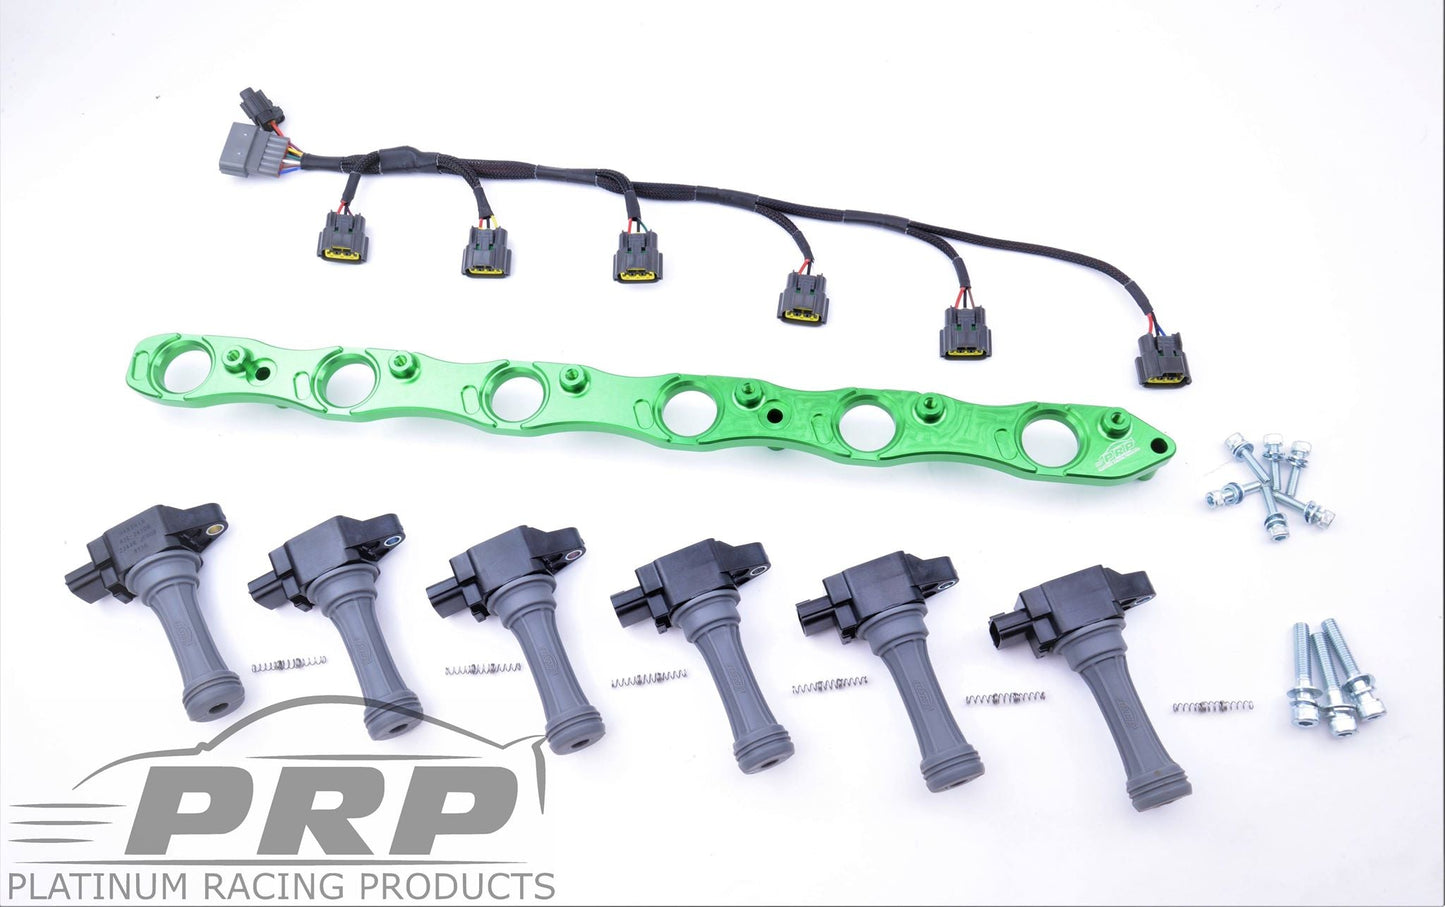 Produtos Platinum Racing - Kit de suporte de bobina RB VR38 (RB20, RB25, RB26)